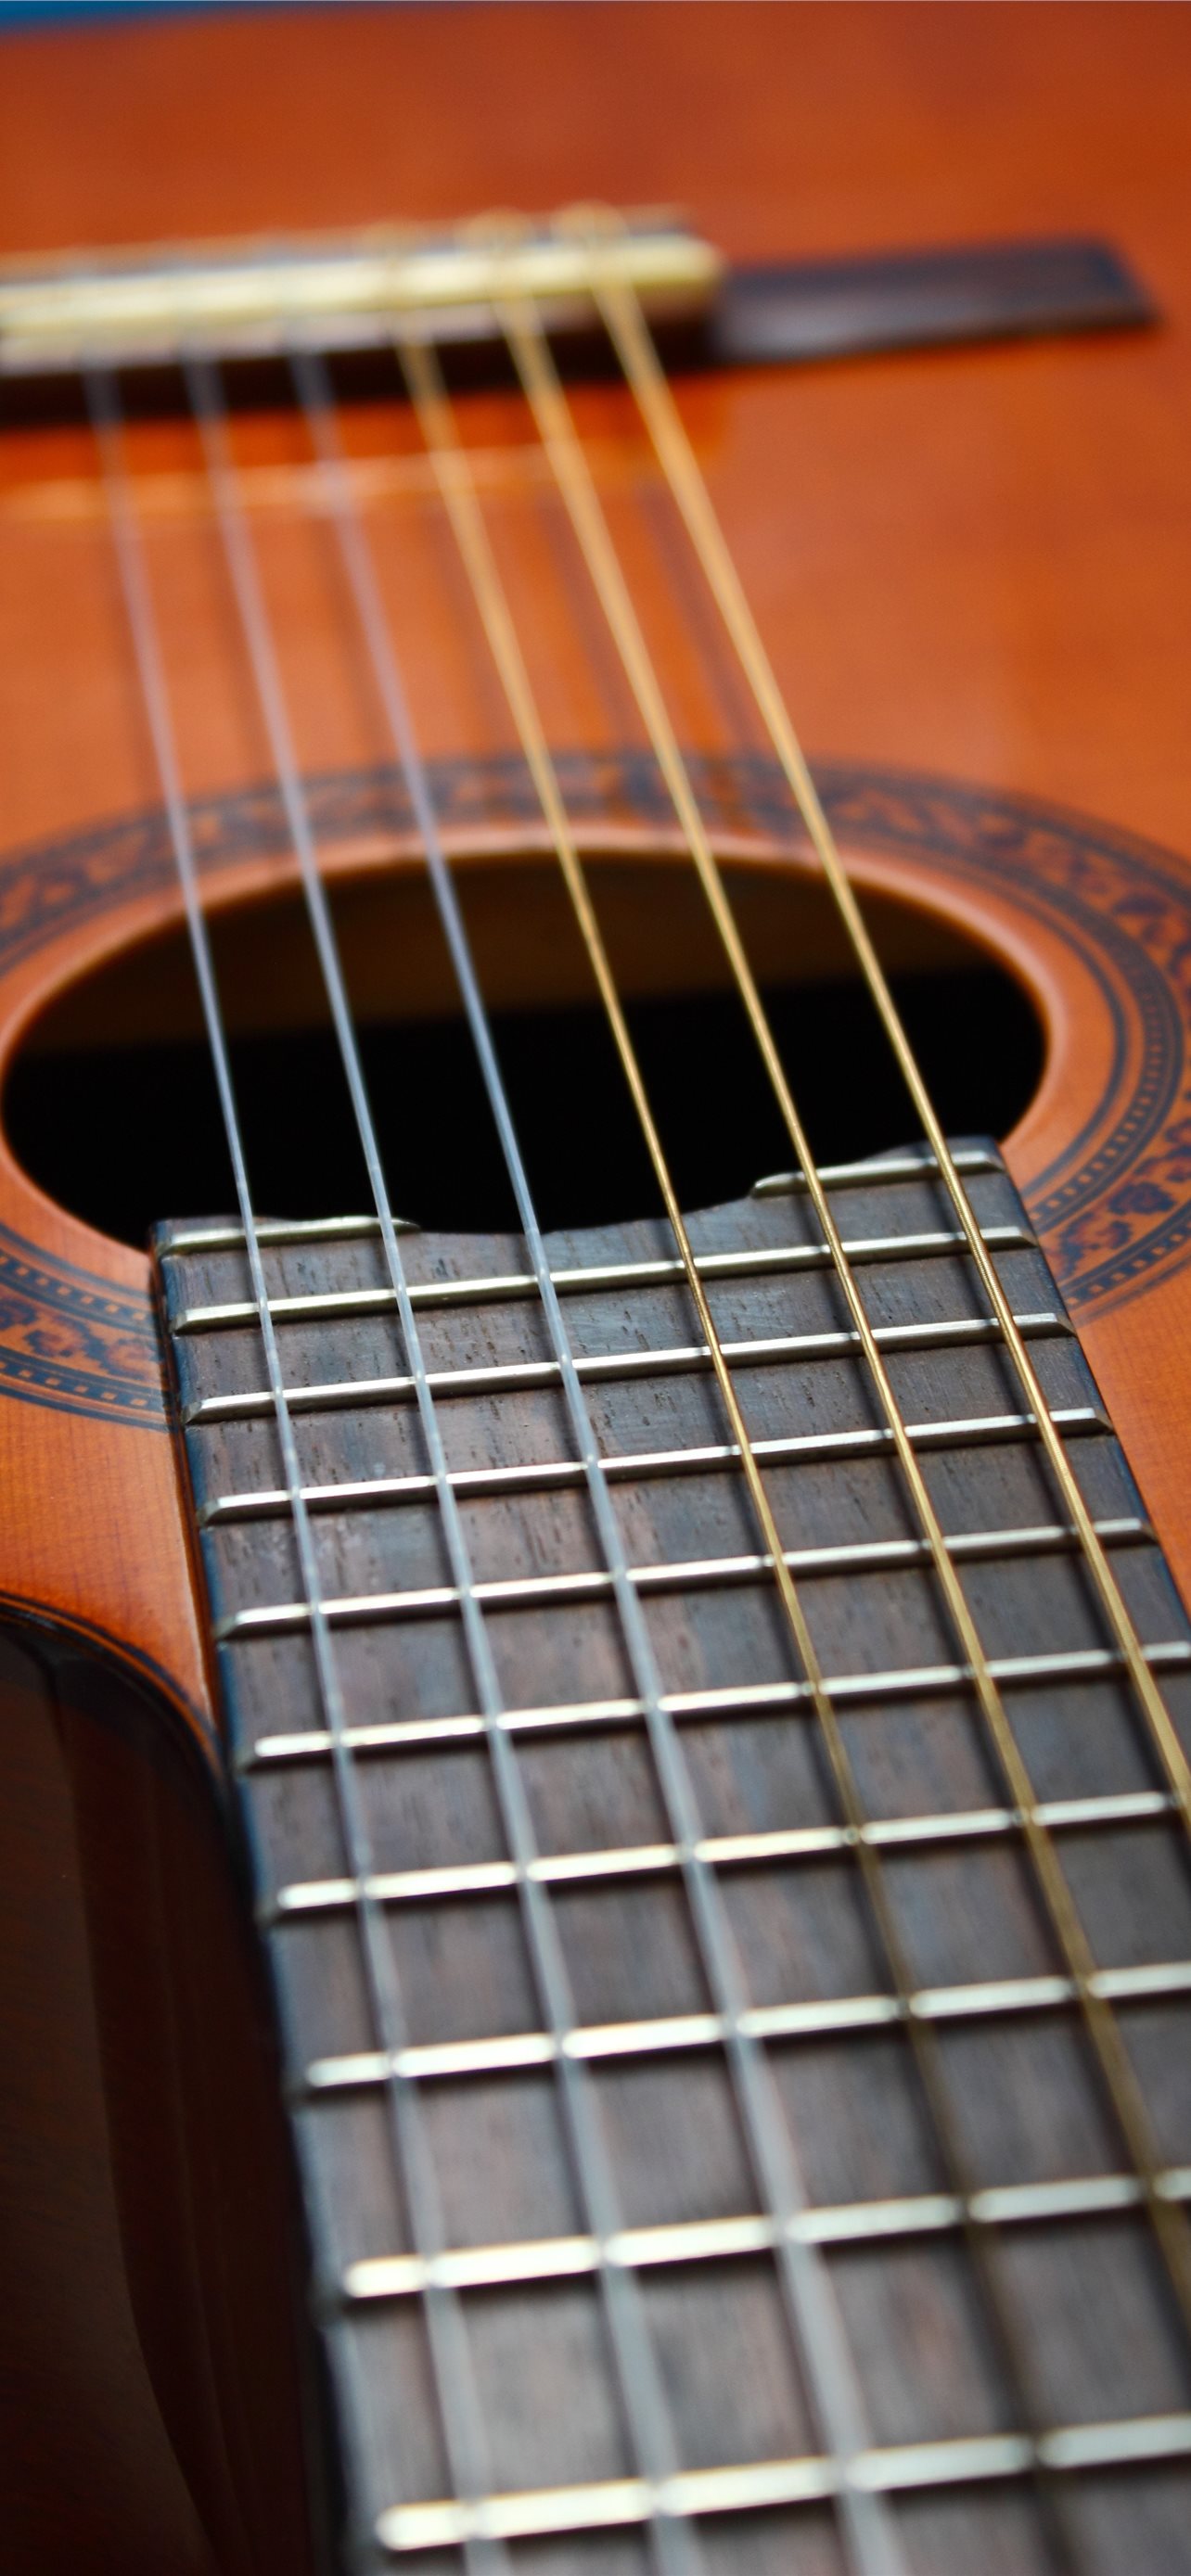 ukulele iPhone wallpaper 